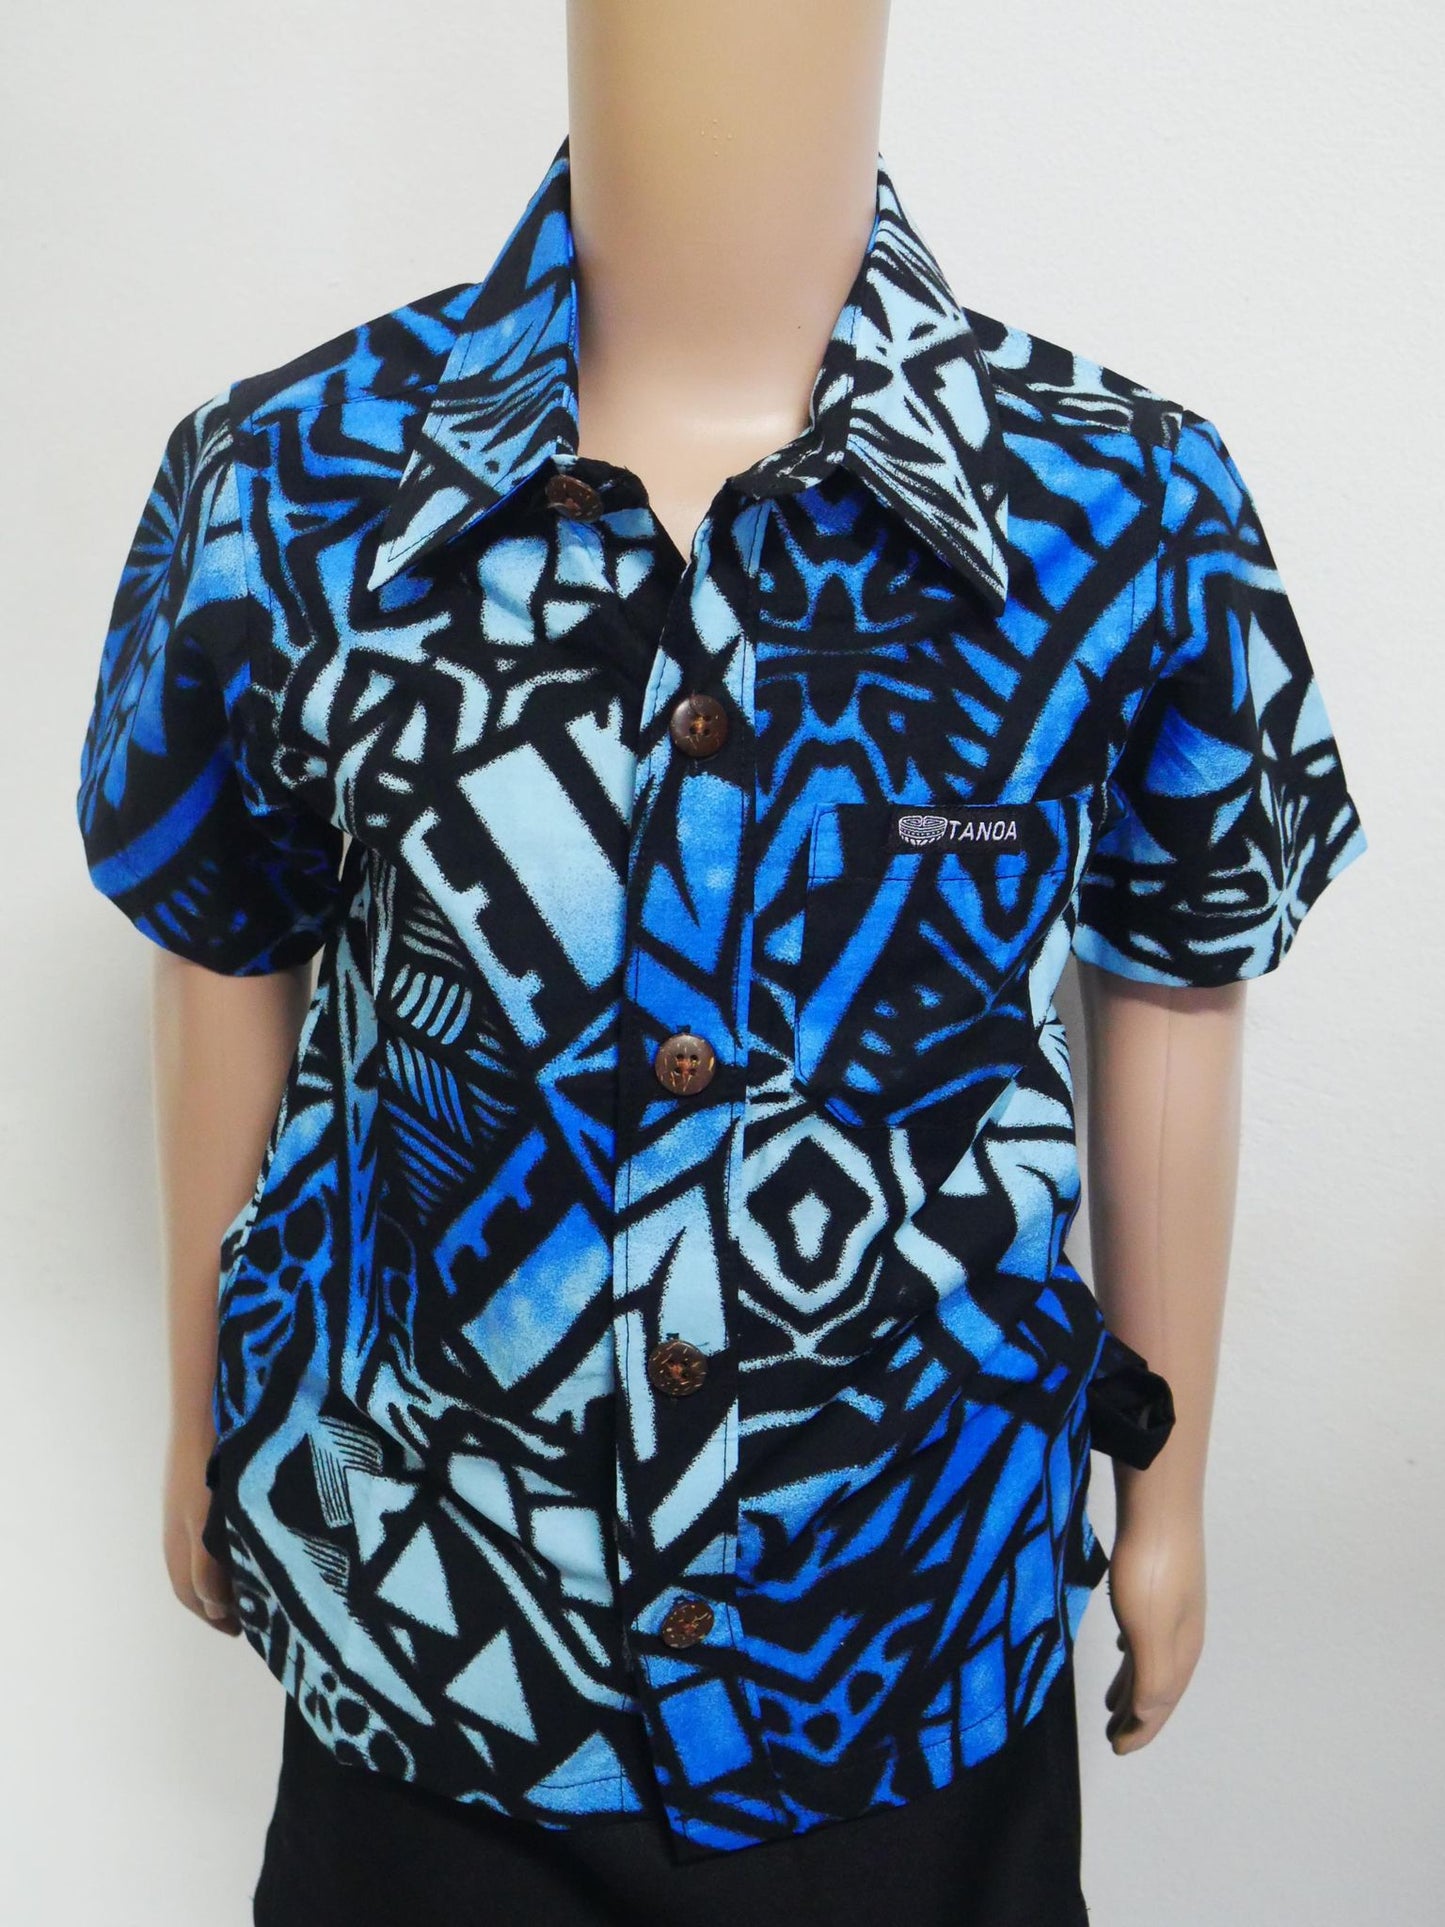 Tanoa Samoa Boy's Blue Shirt (Light Blue & Black)